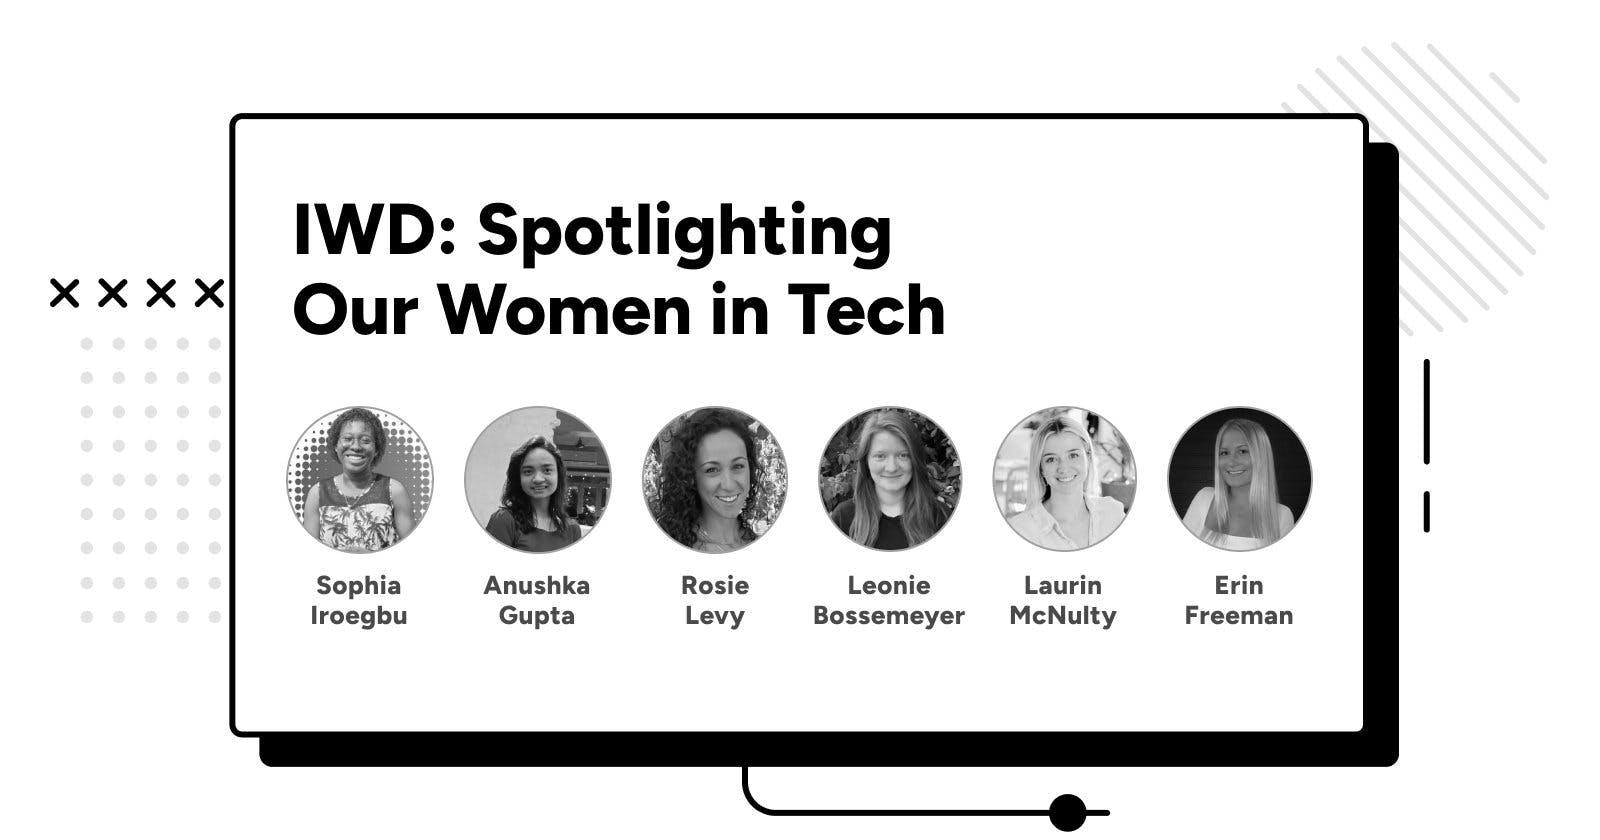 International Women’s Day: Spotlighting Our Women in Tech